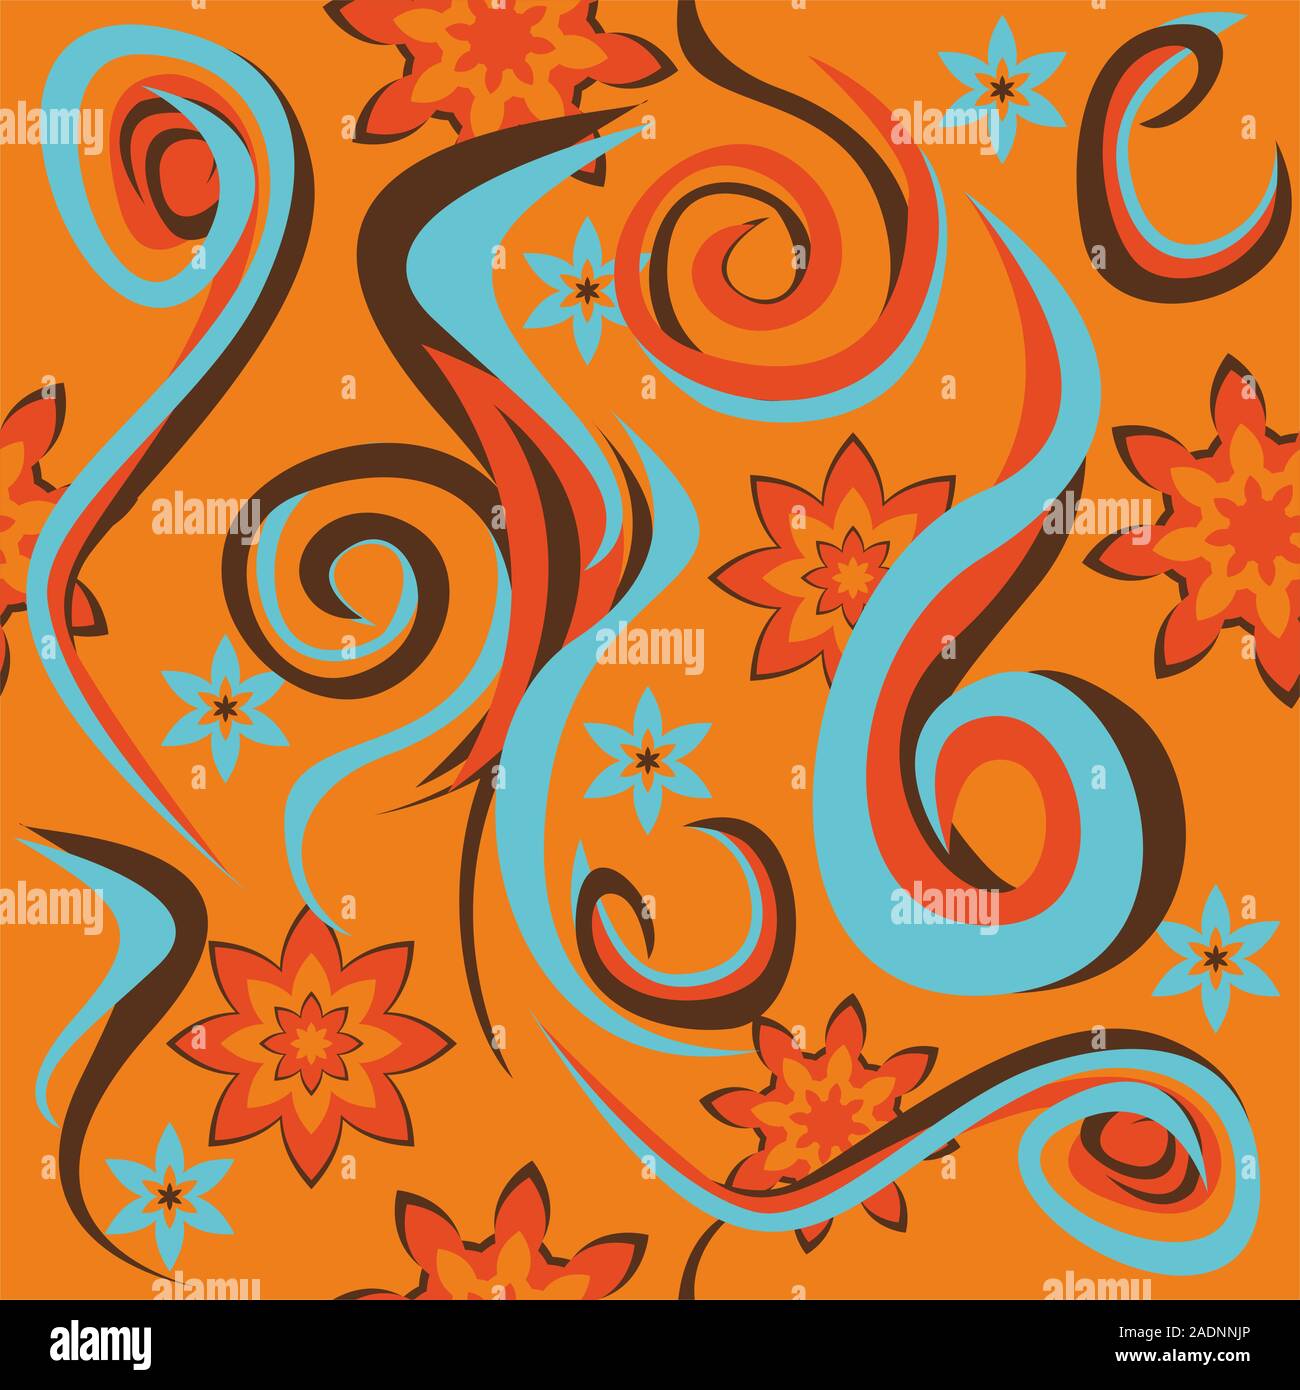 Abstract motivo a fiori e forme complesse isolato su sfondo arancione.spirale geometrica figure.ondulate. - Vettore Illustrazione Vettoriale